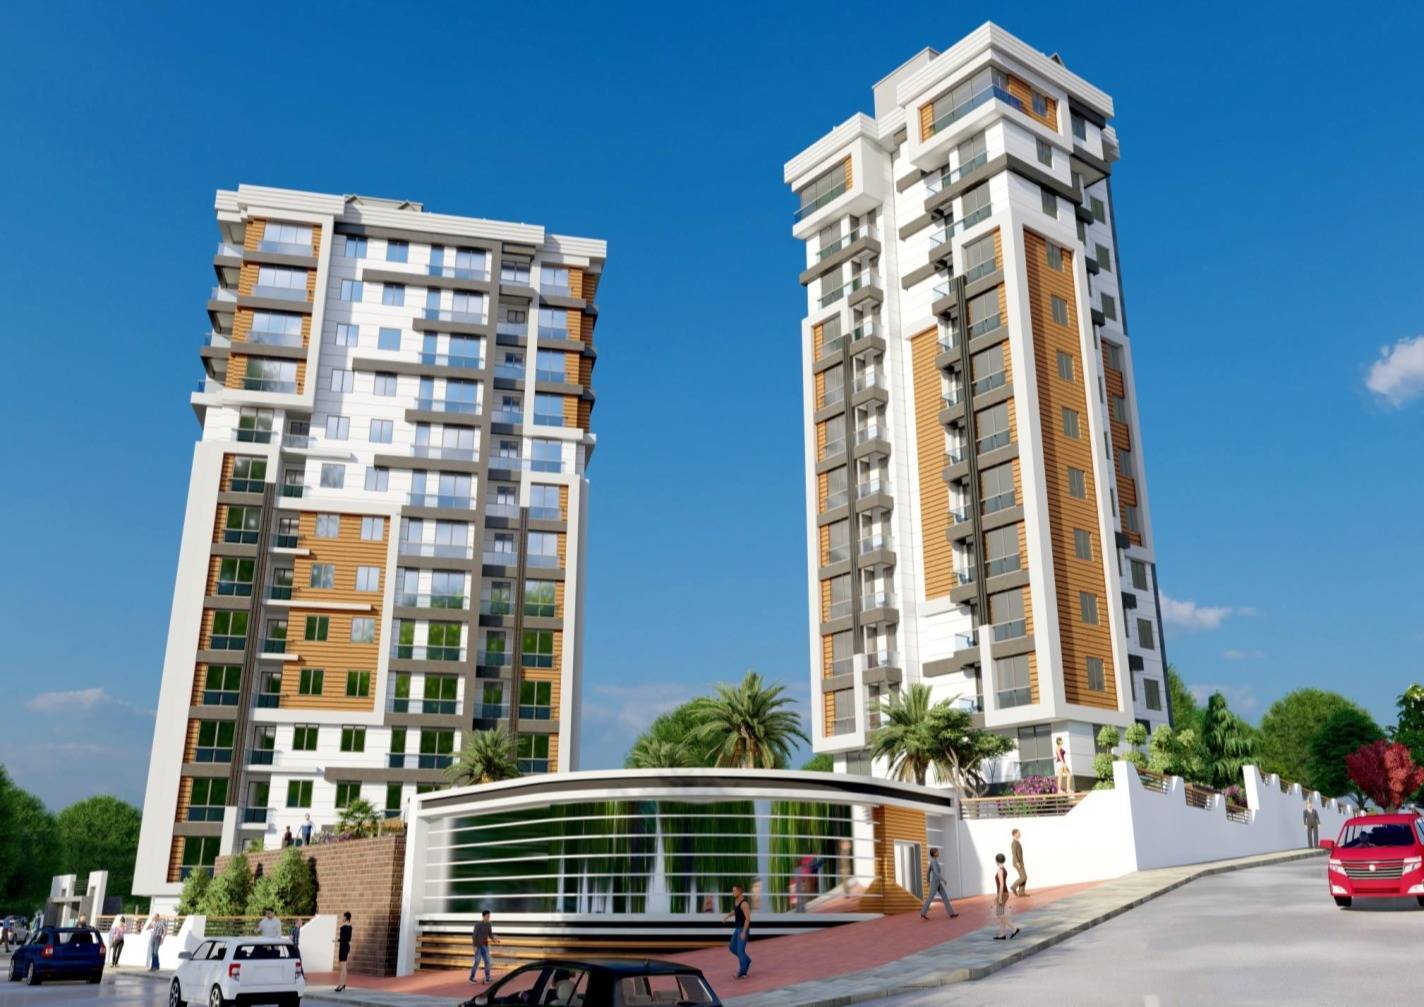 Türkiye, İstanbul'da satılık yeni inşa edilmiş daireler